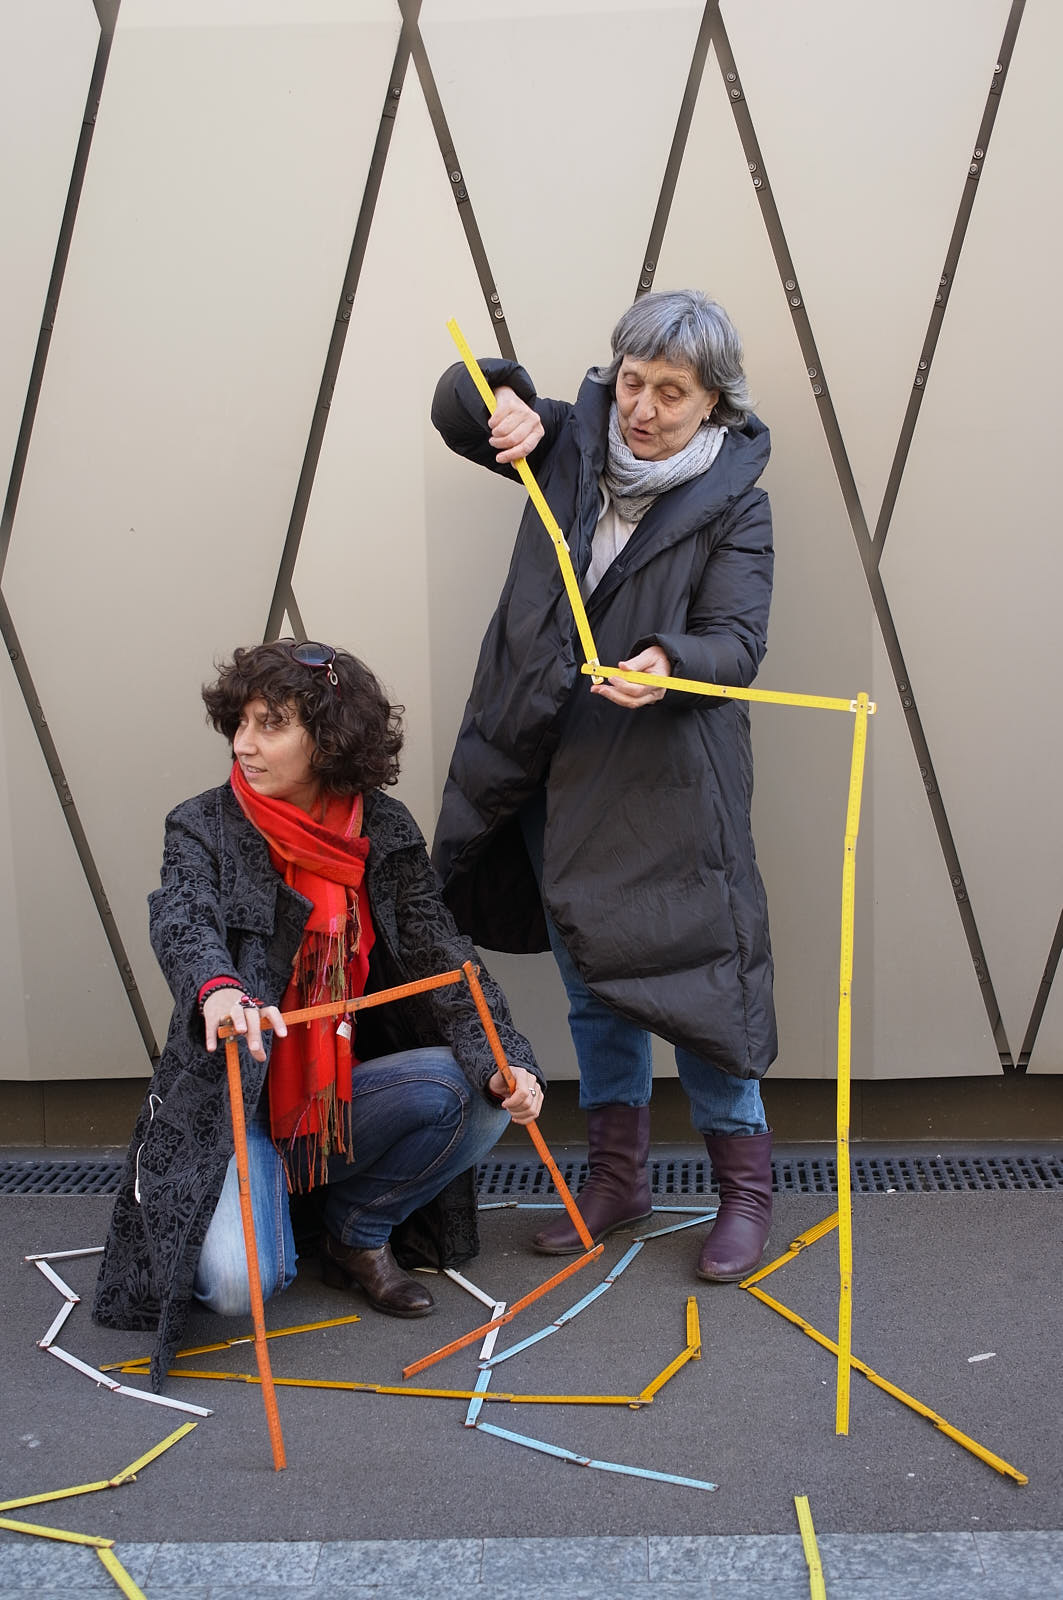 Equipe à l’initiative du projet pilote “Tu m’as vu?” Catherine Froidevaux (à droite) et Carole-lyne Klay